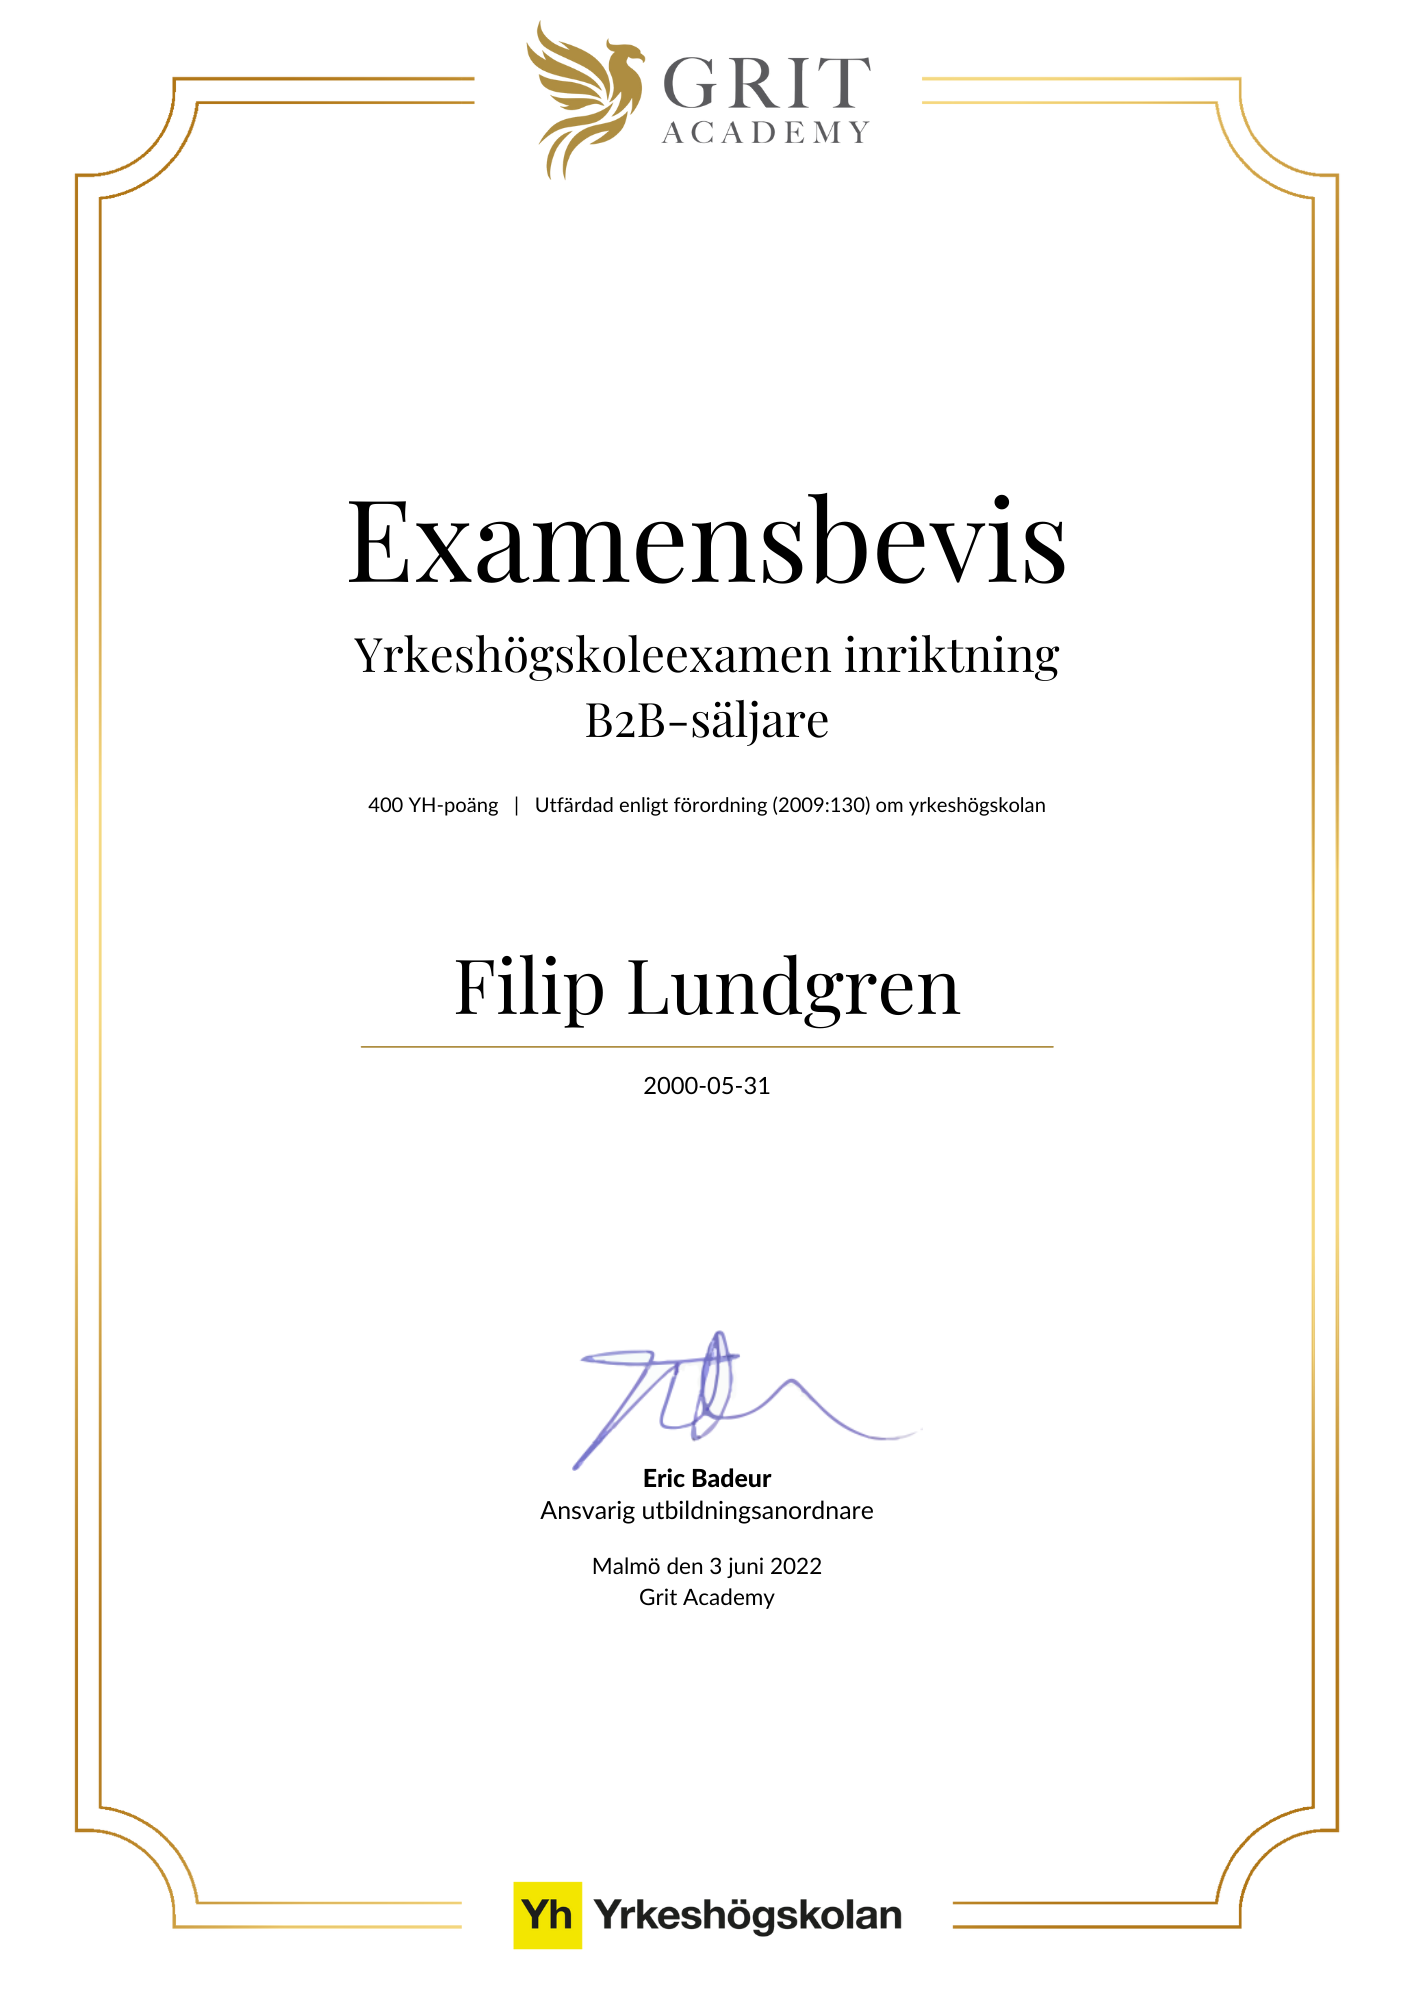 Examensbevis Filip Lundgren